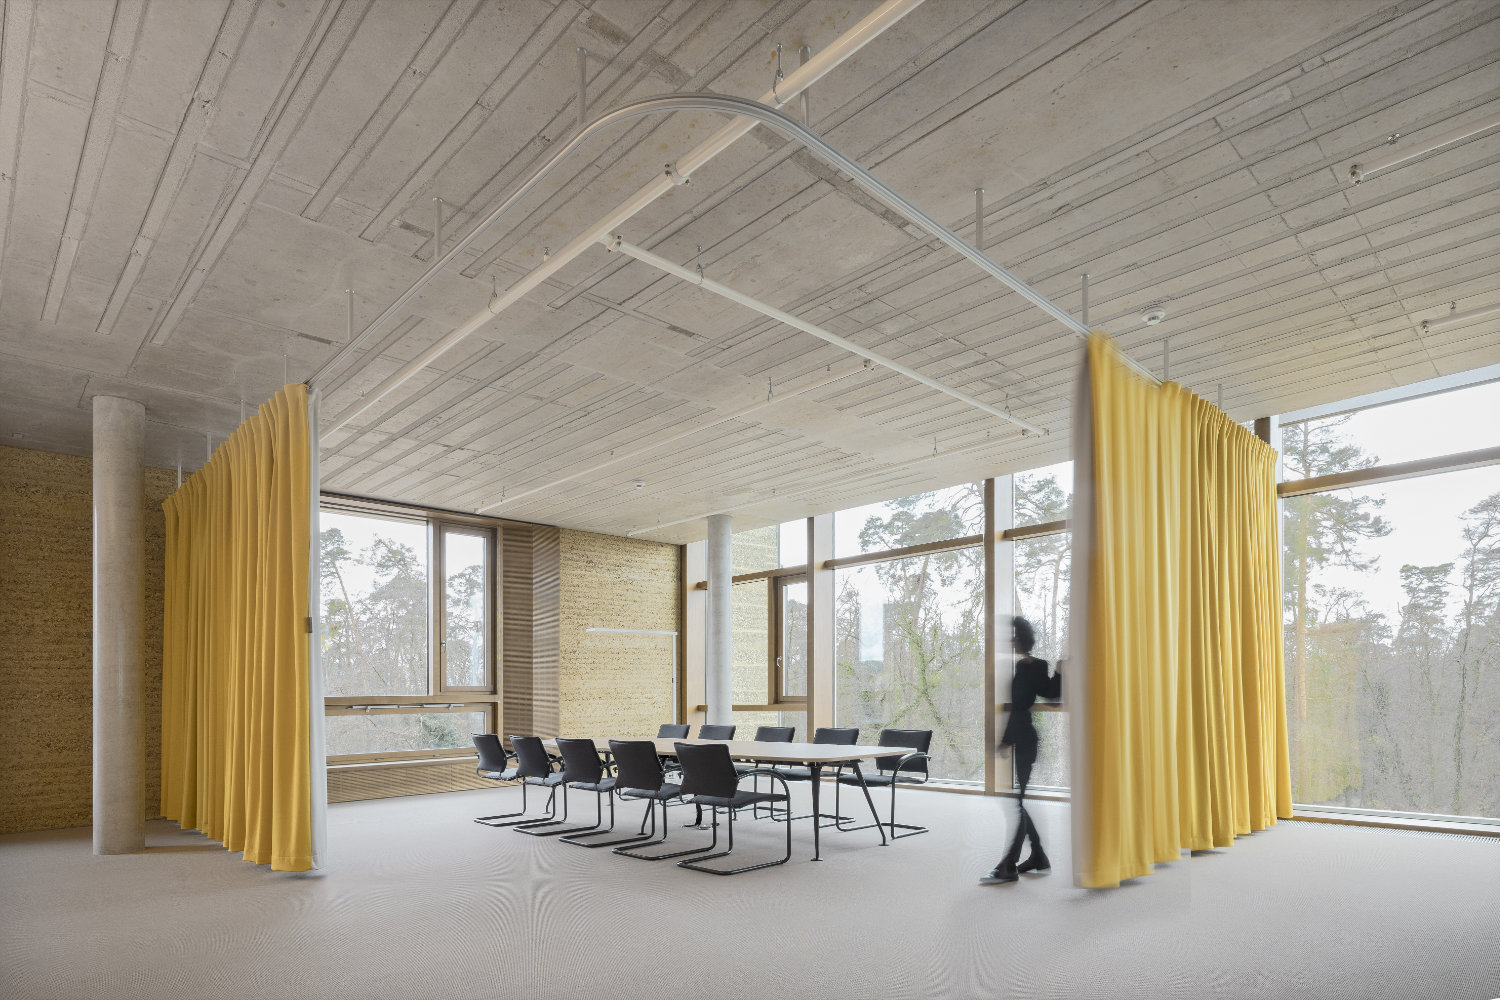 Konferenzraum mit Lehmwand, Fenstern und gelbem Vorhang